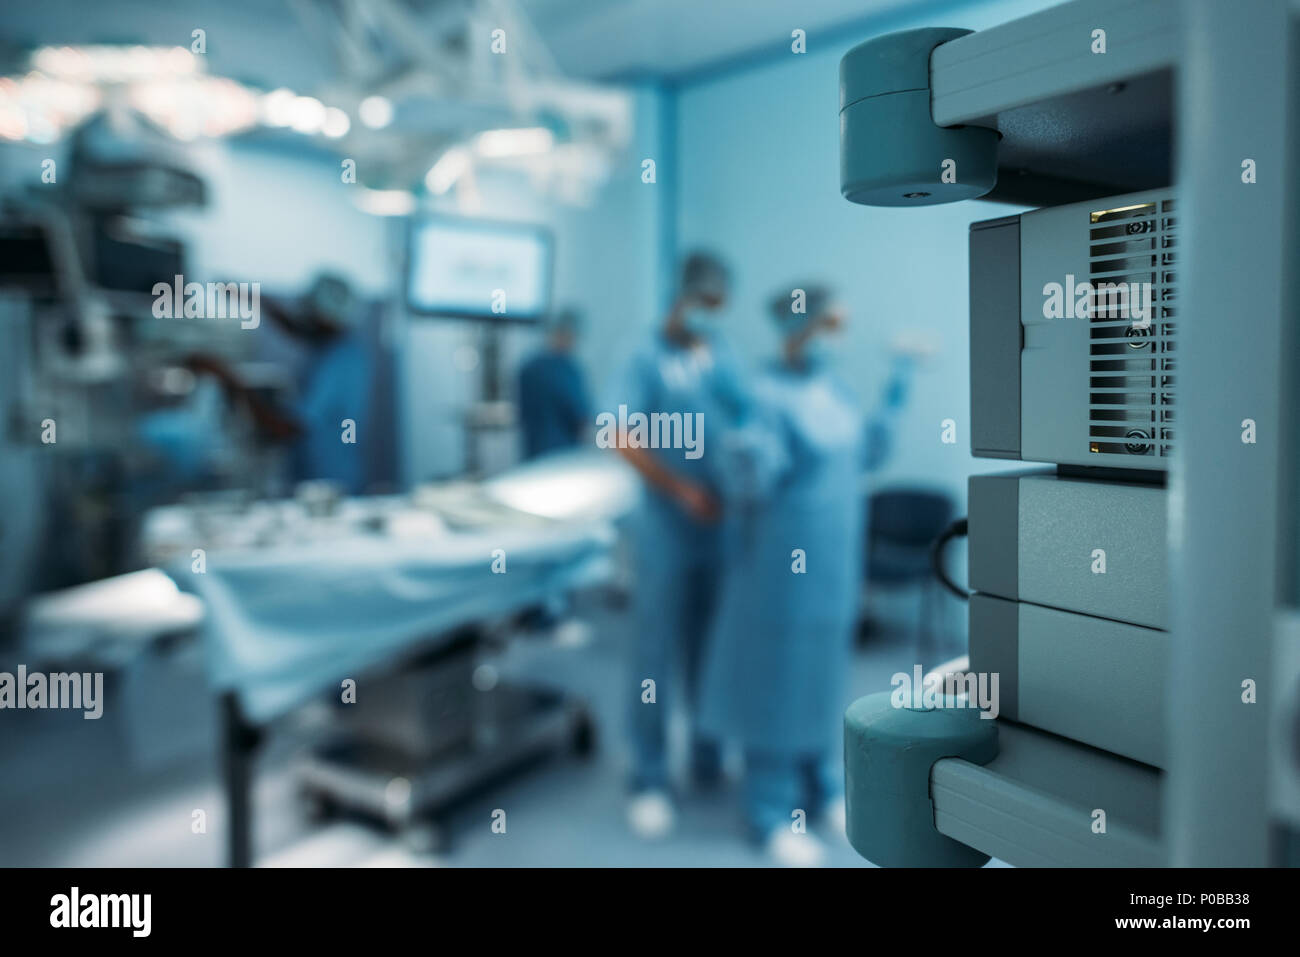 Arzt helfen chirurgische Uniform auf unscharfen Hintergrund zu tragen Stockfoto